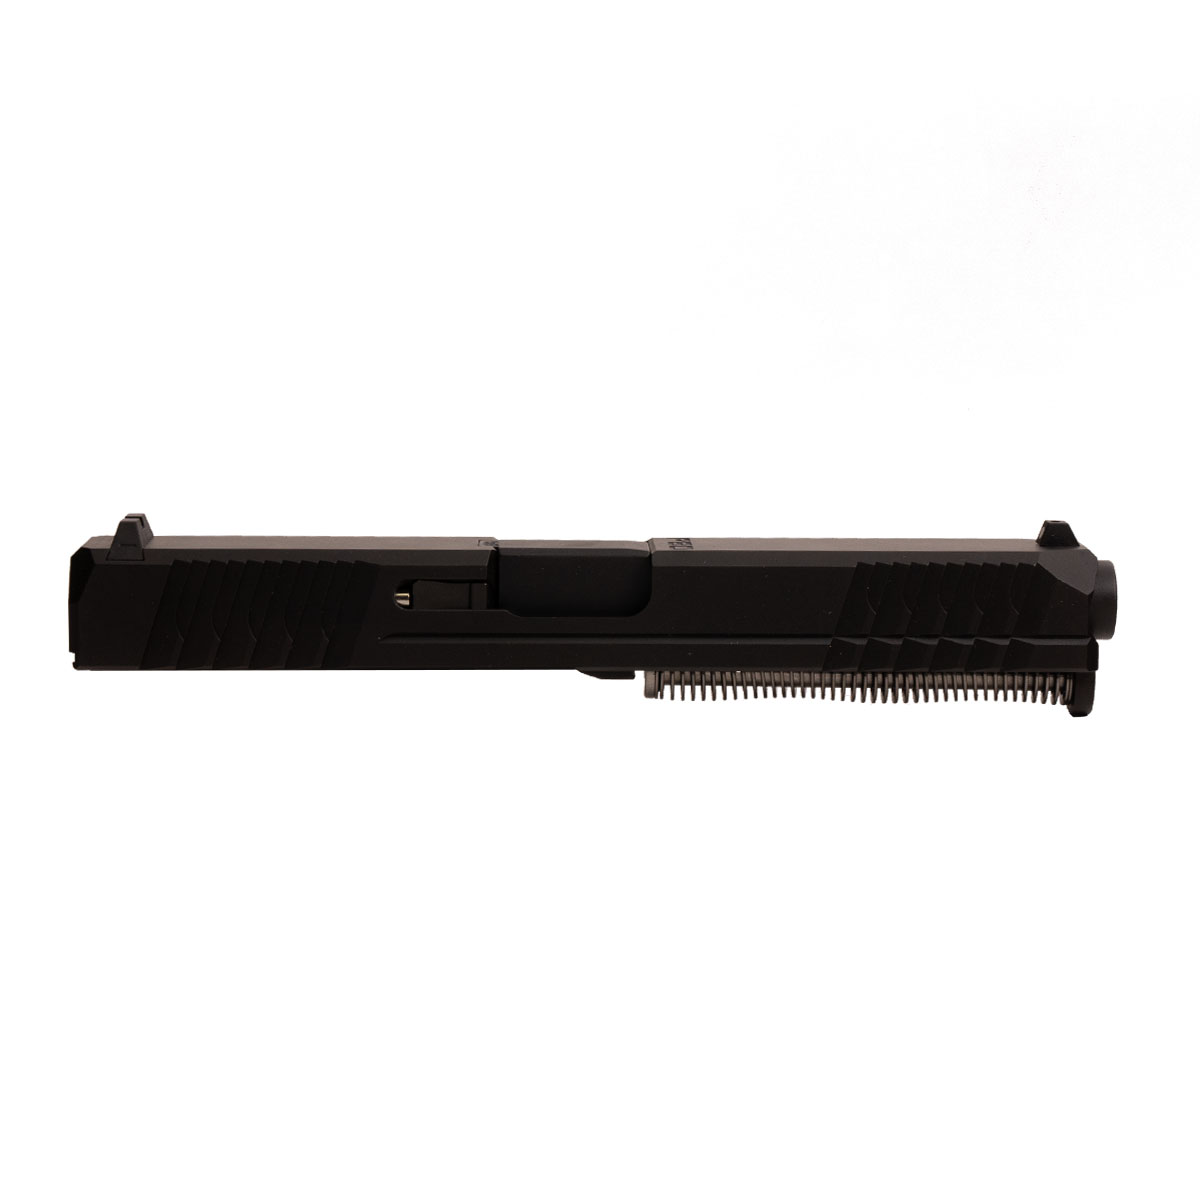 OTD 'Eidolon Ally' 9mm Complete Slide Kit - Glock 17 Gen 1-3 Compatible